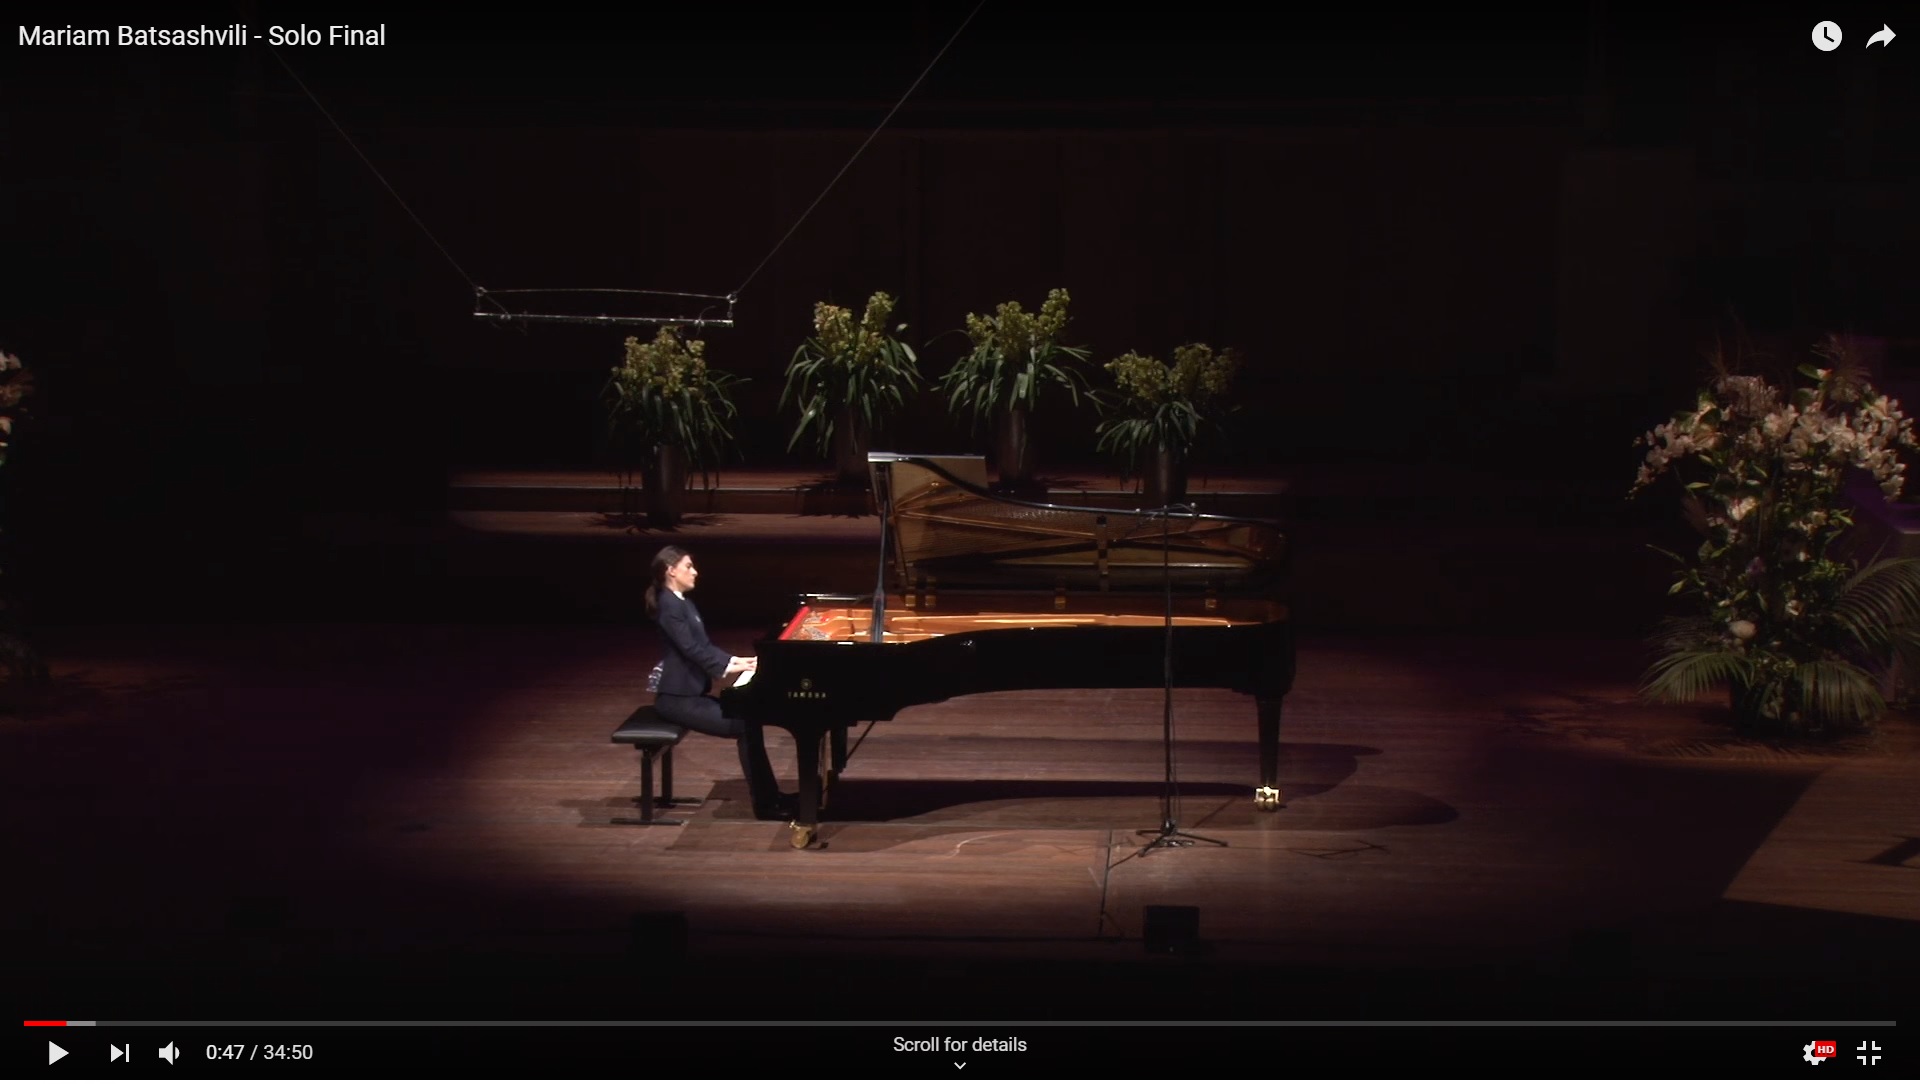 Video thumbnail: Mariam Batsashvili sitting at a grand piano